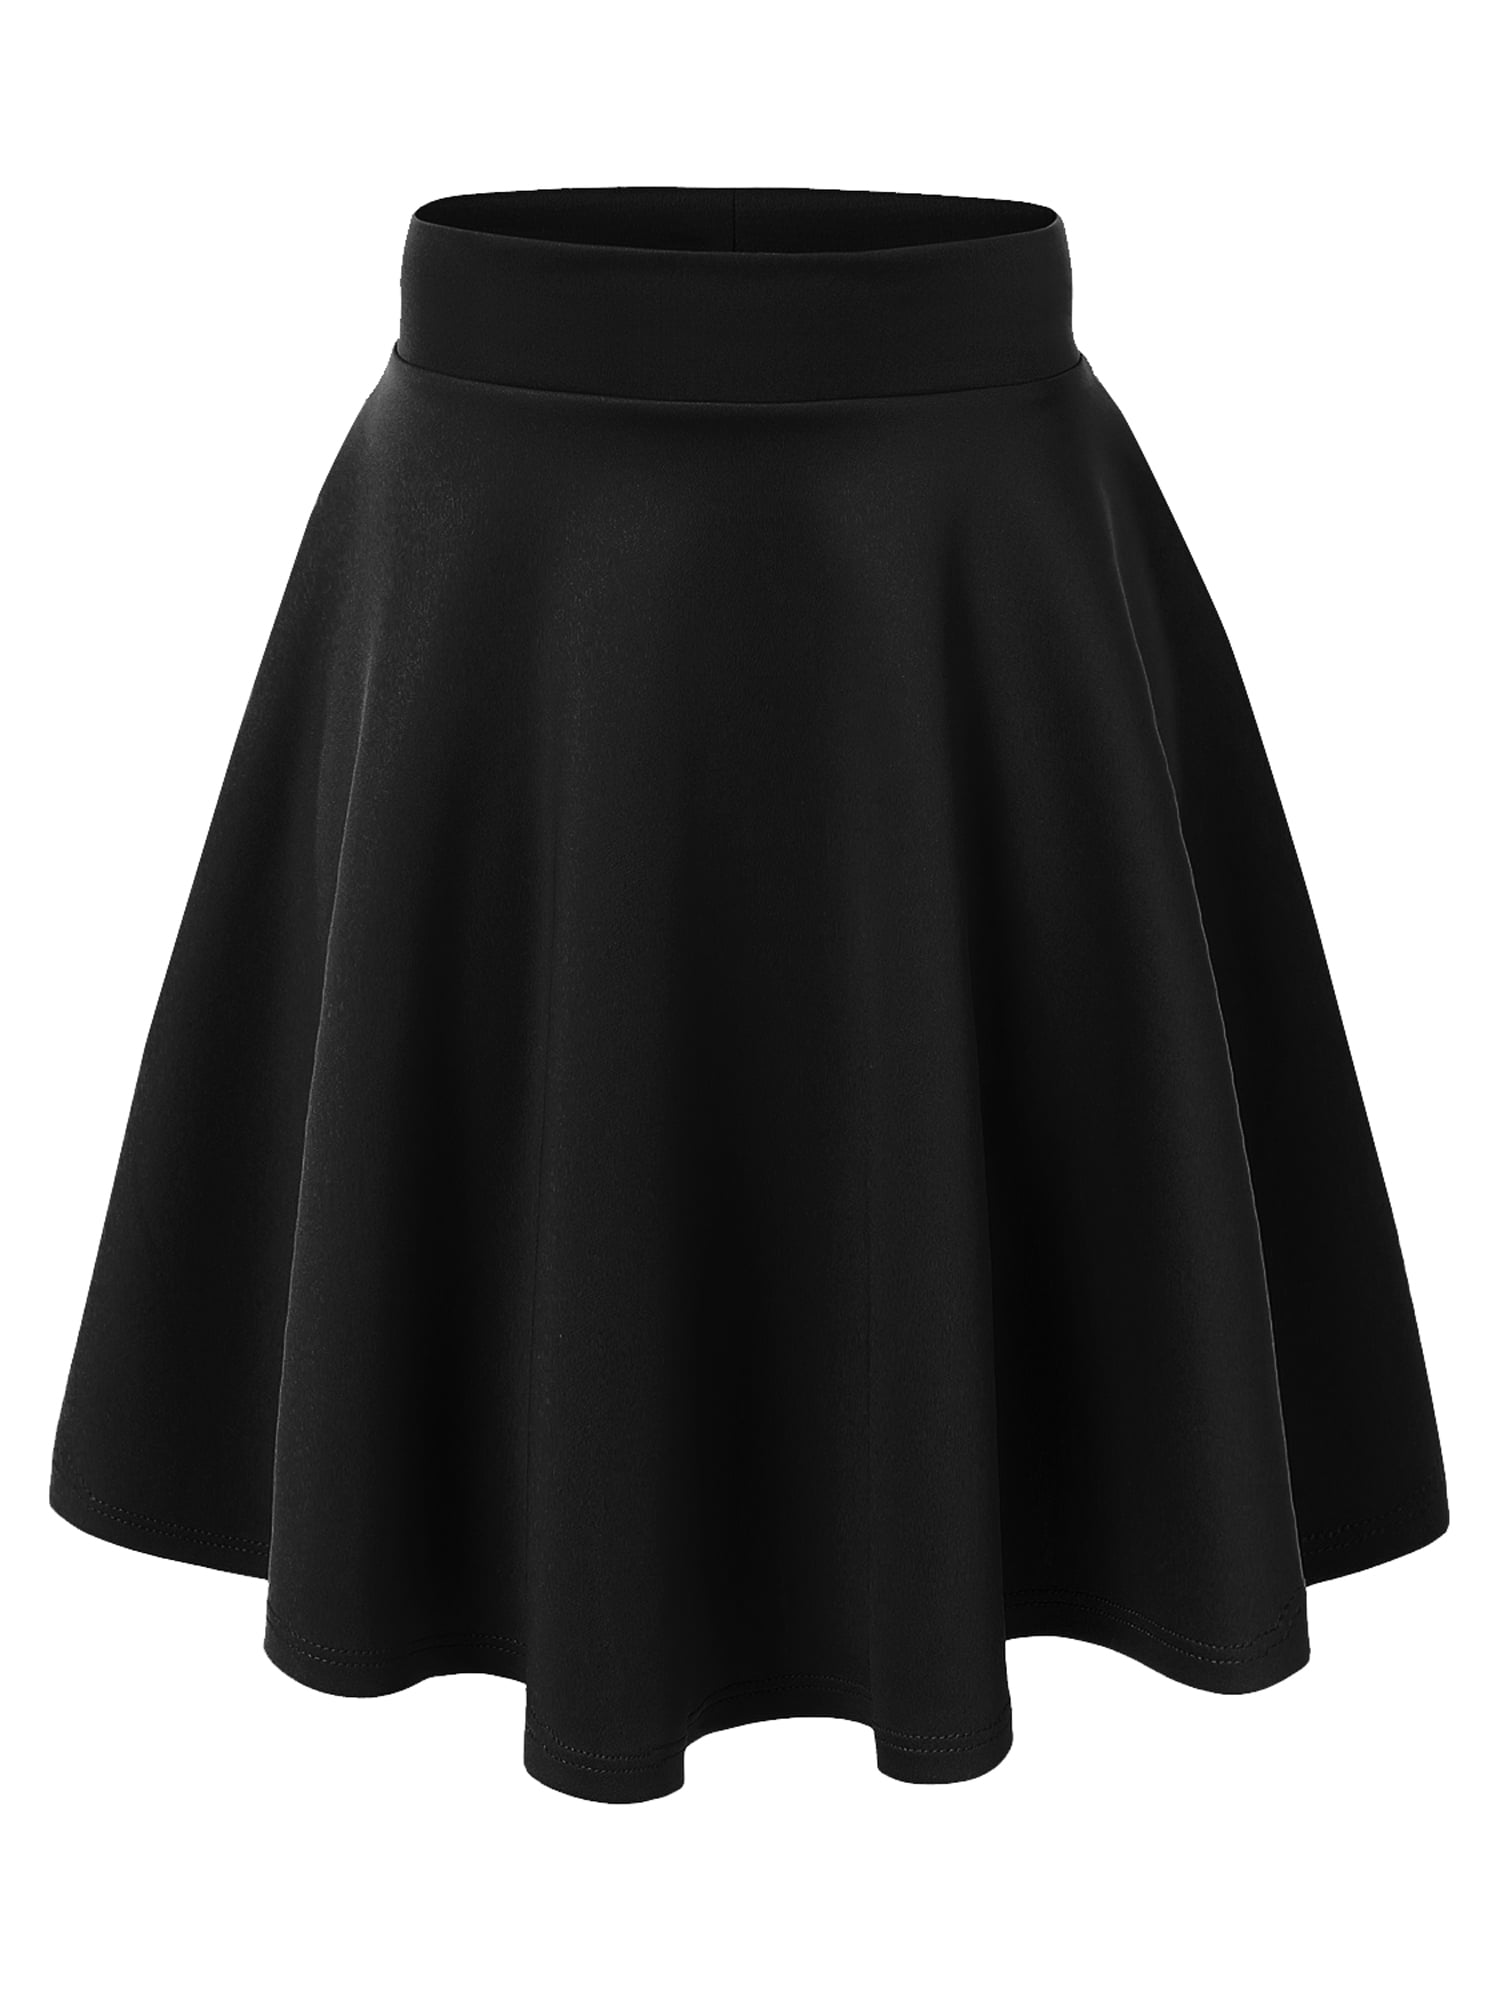 MBJ WB829 Womens Flirty Flare Skirt S BLACK